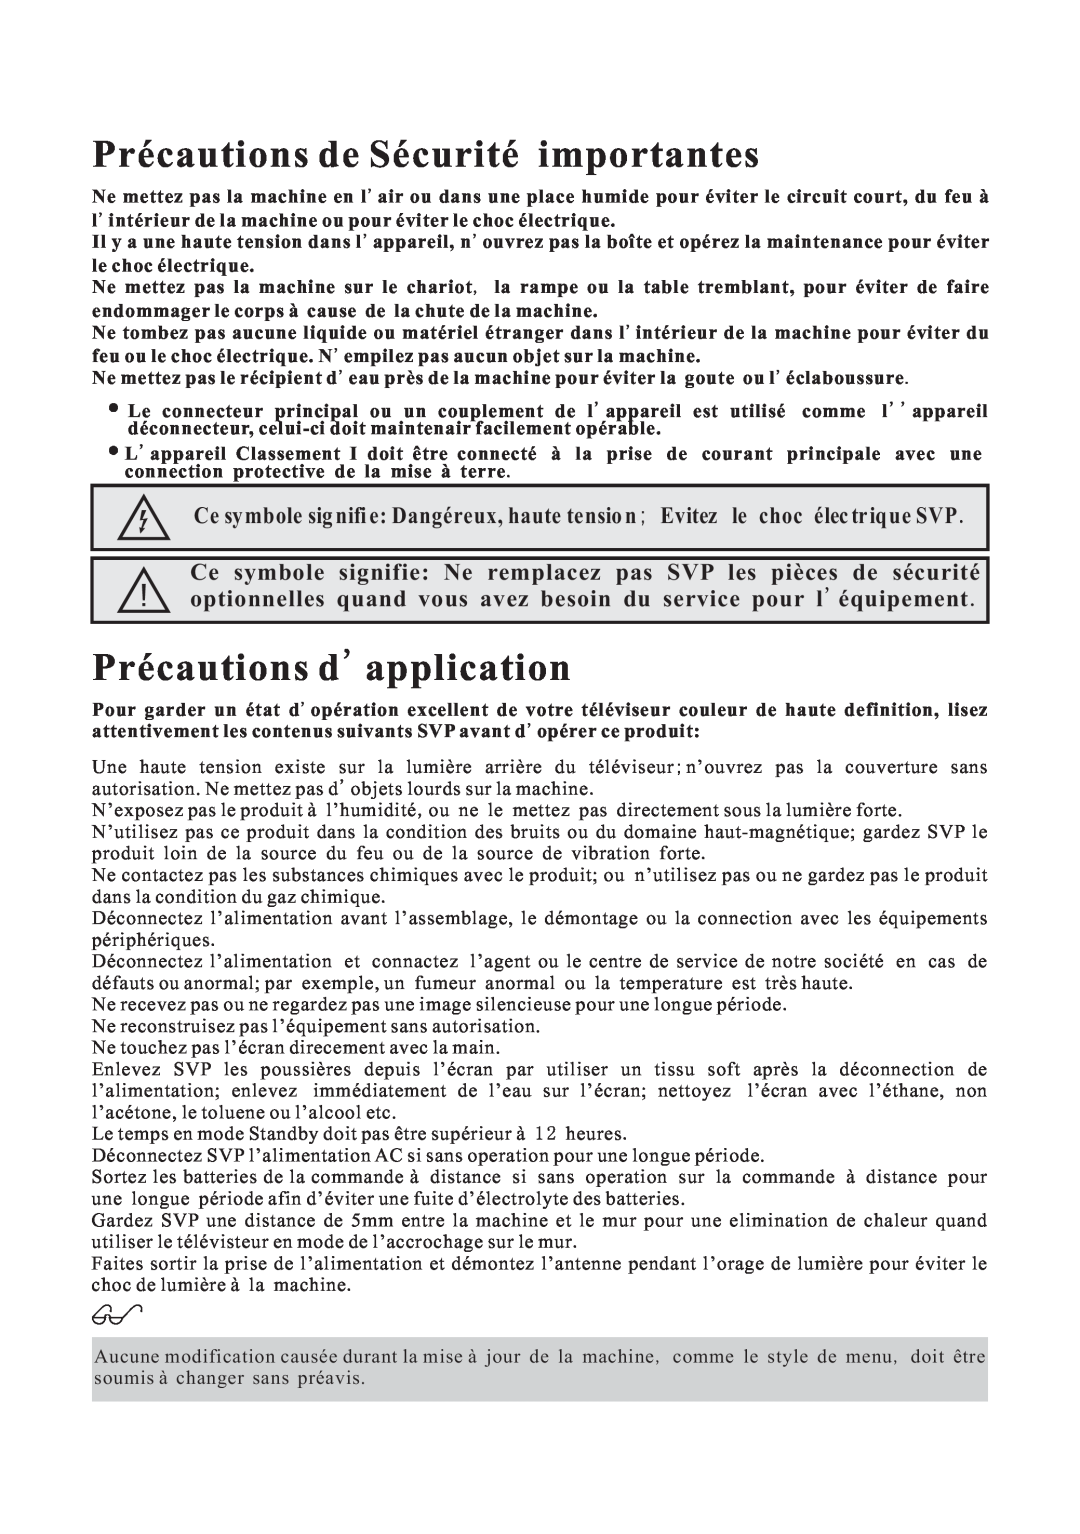 Curtis LCDVD152 manual Précautions de Sécurité importantes, Précautions d application 